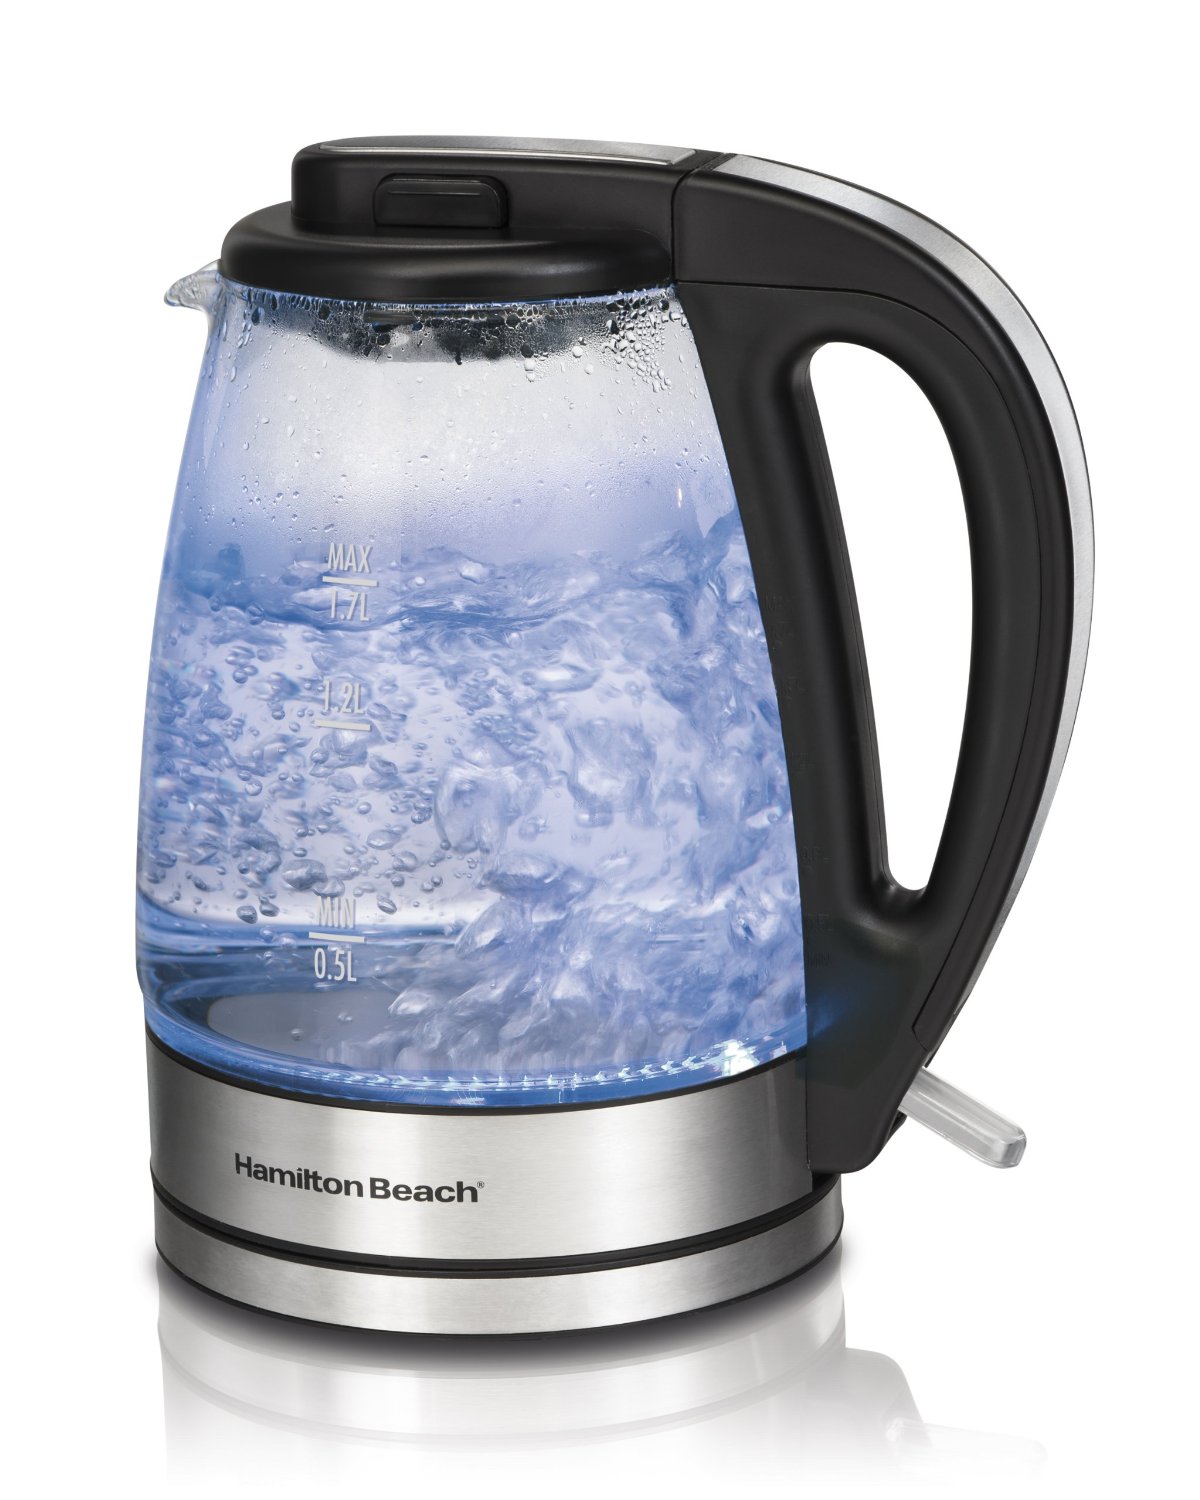 Hamilton beach glass kettle review